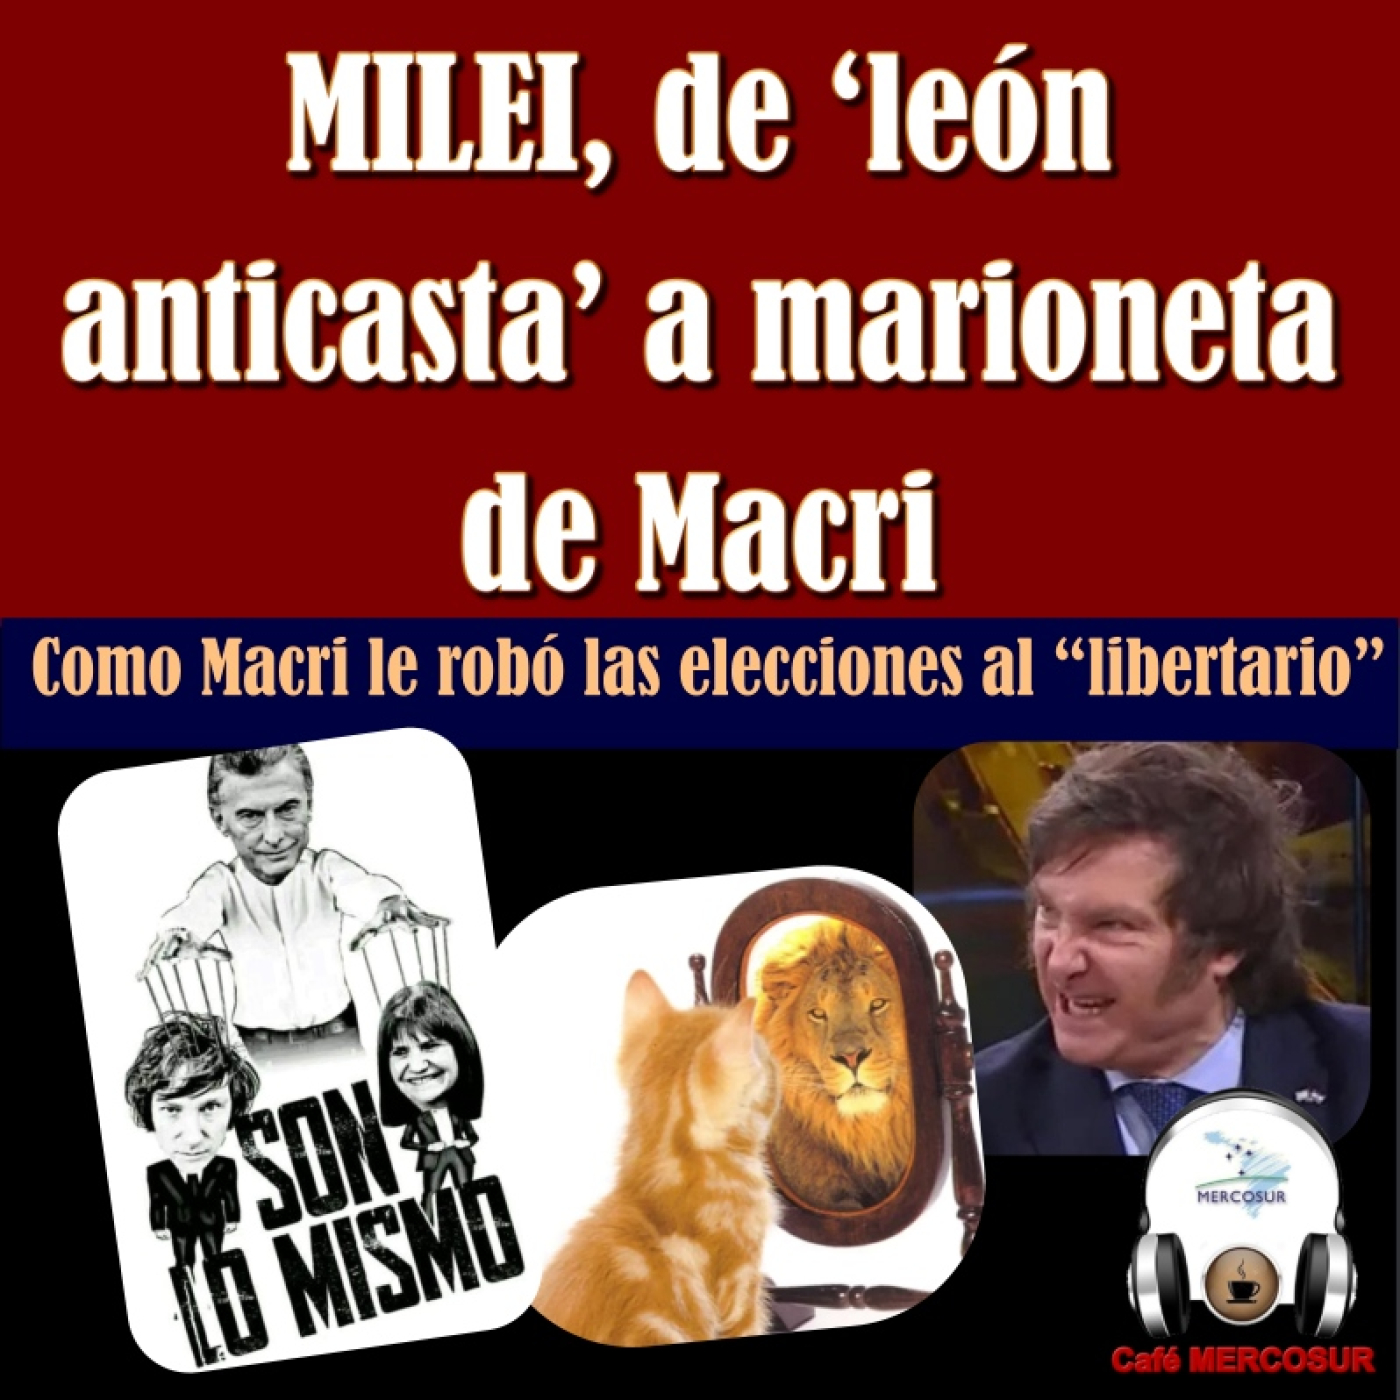 MILEI, de “león anticasta” a marioneta de Macri